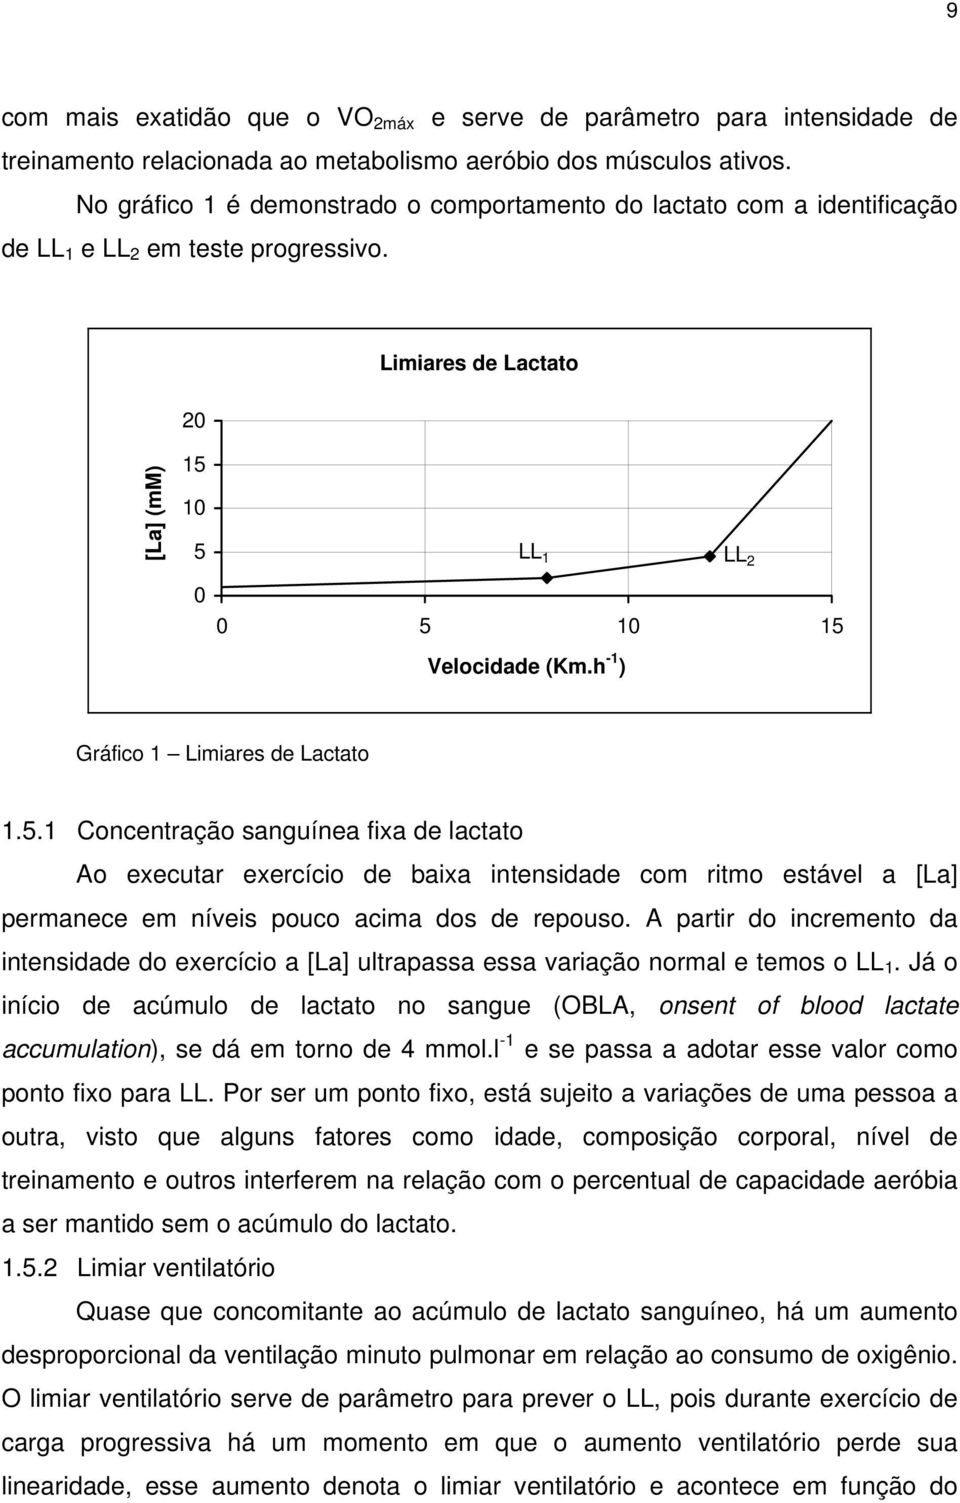 h -1 ) Gráfico 1 Limiares de Lactato 1.5.1 Concentração sanguínea fixa de lactato Ao executar exercício de baixa intensidade com ritmo estável a [La] permanece em níveis pouco acima dos de repouso.